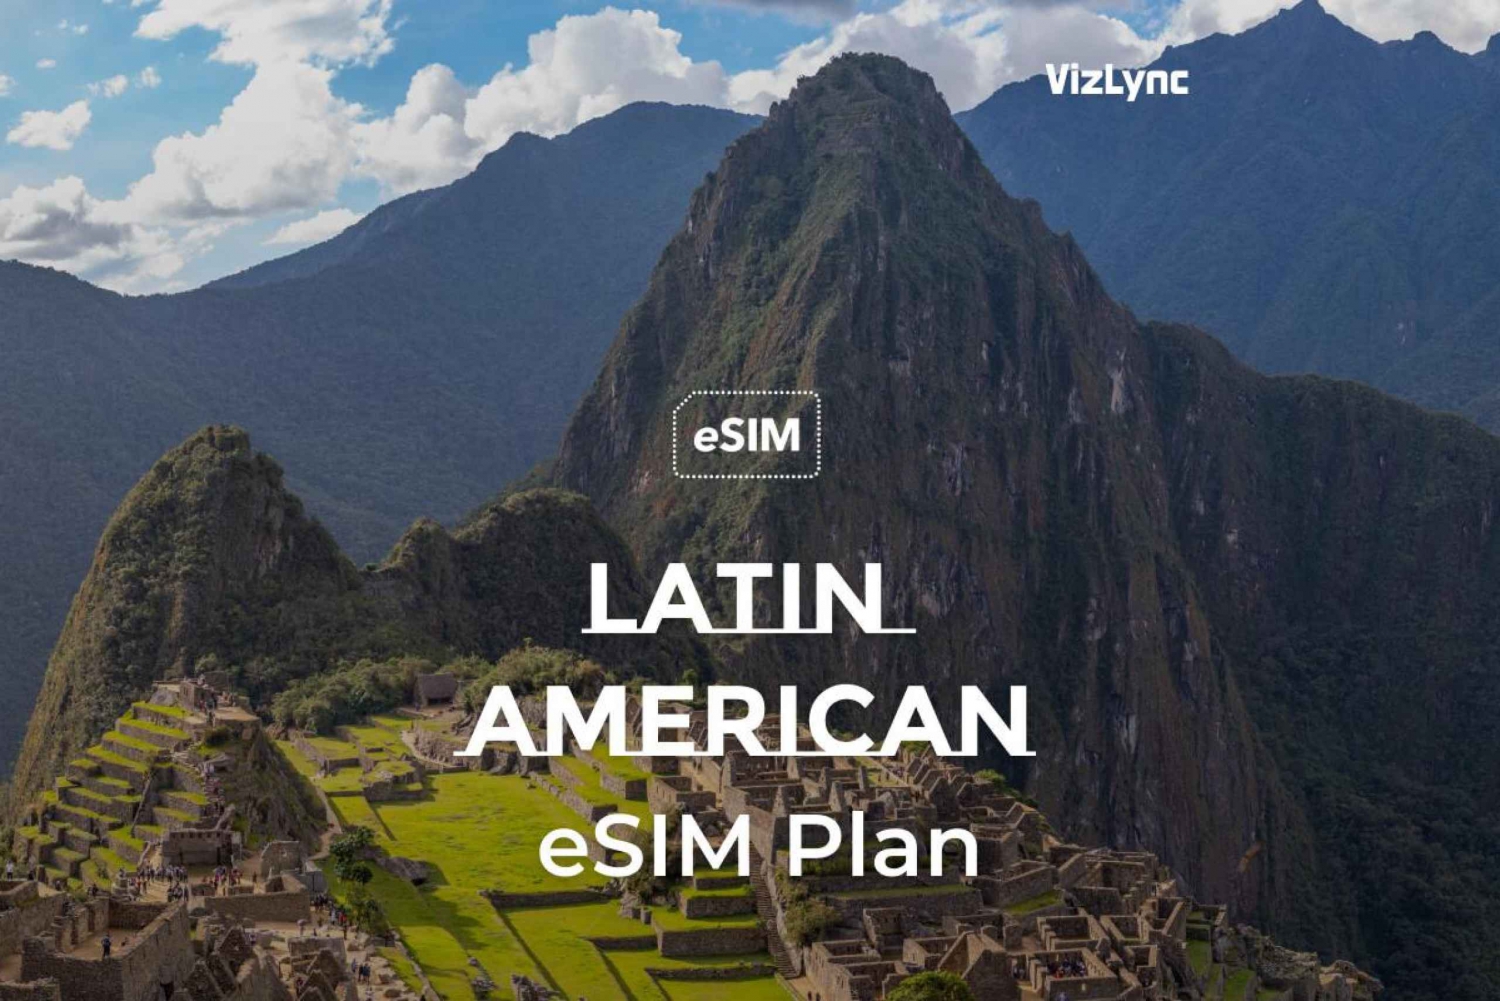 Pozostań w kontakcie w całej Ameryce Łacińskiej dzięki naszym eSIM-om obsługującym tylko dane